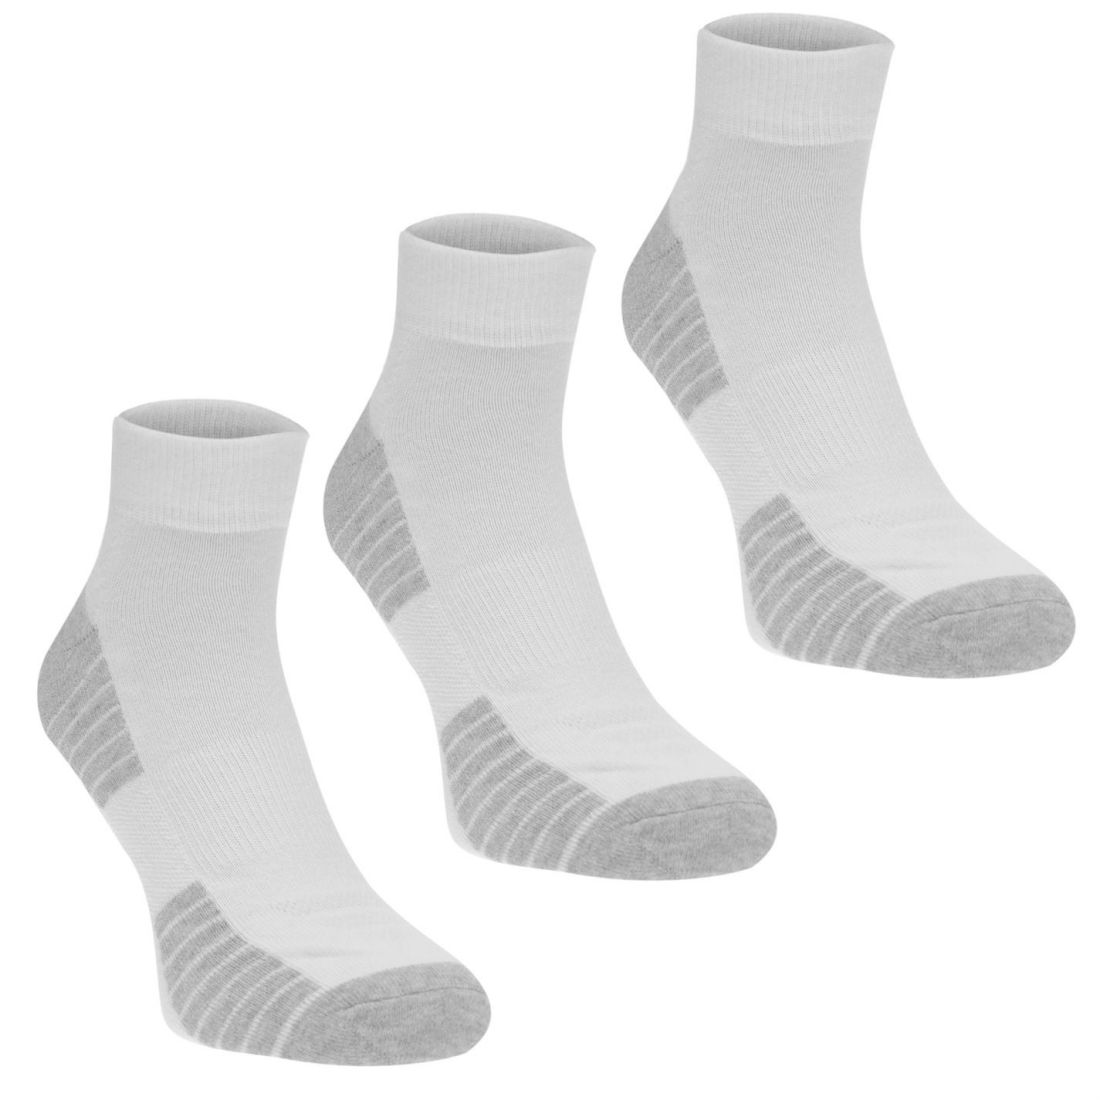 Under Armour Mens Tech Quarter 3 Pack Socks Moisture Wicking Training | eBay